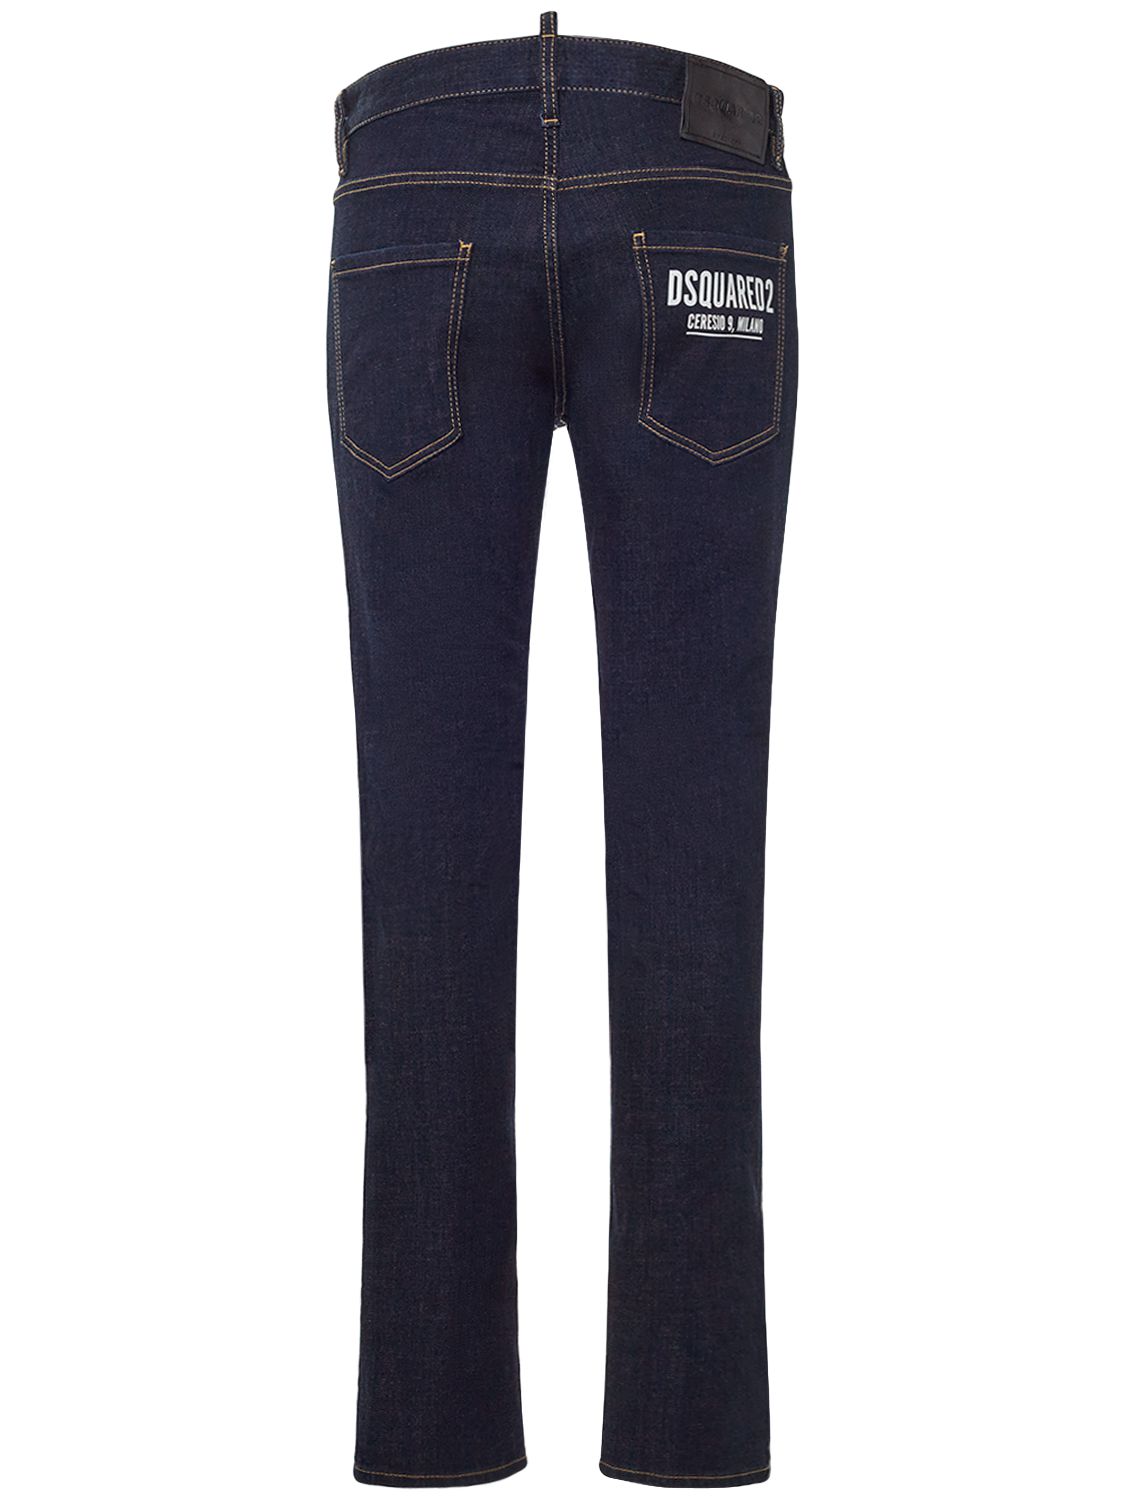 Ceresio 9 Cool Guy Cotton Denim Jeans - DSQUARED2 - Modalova